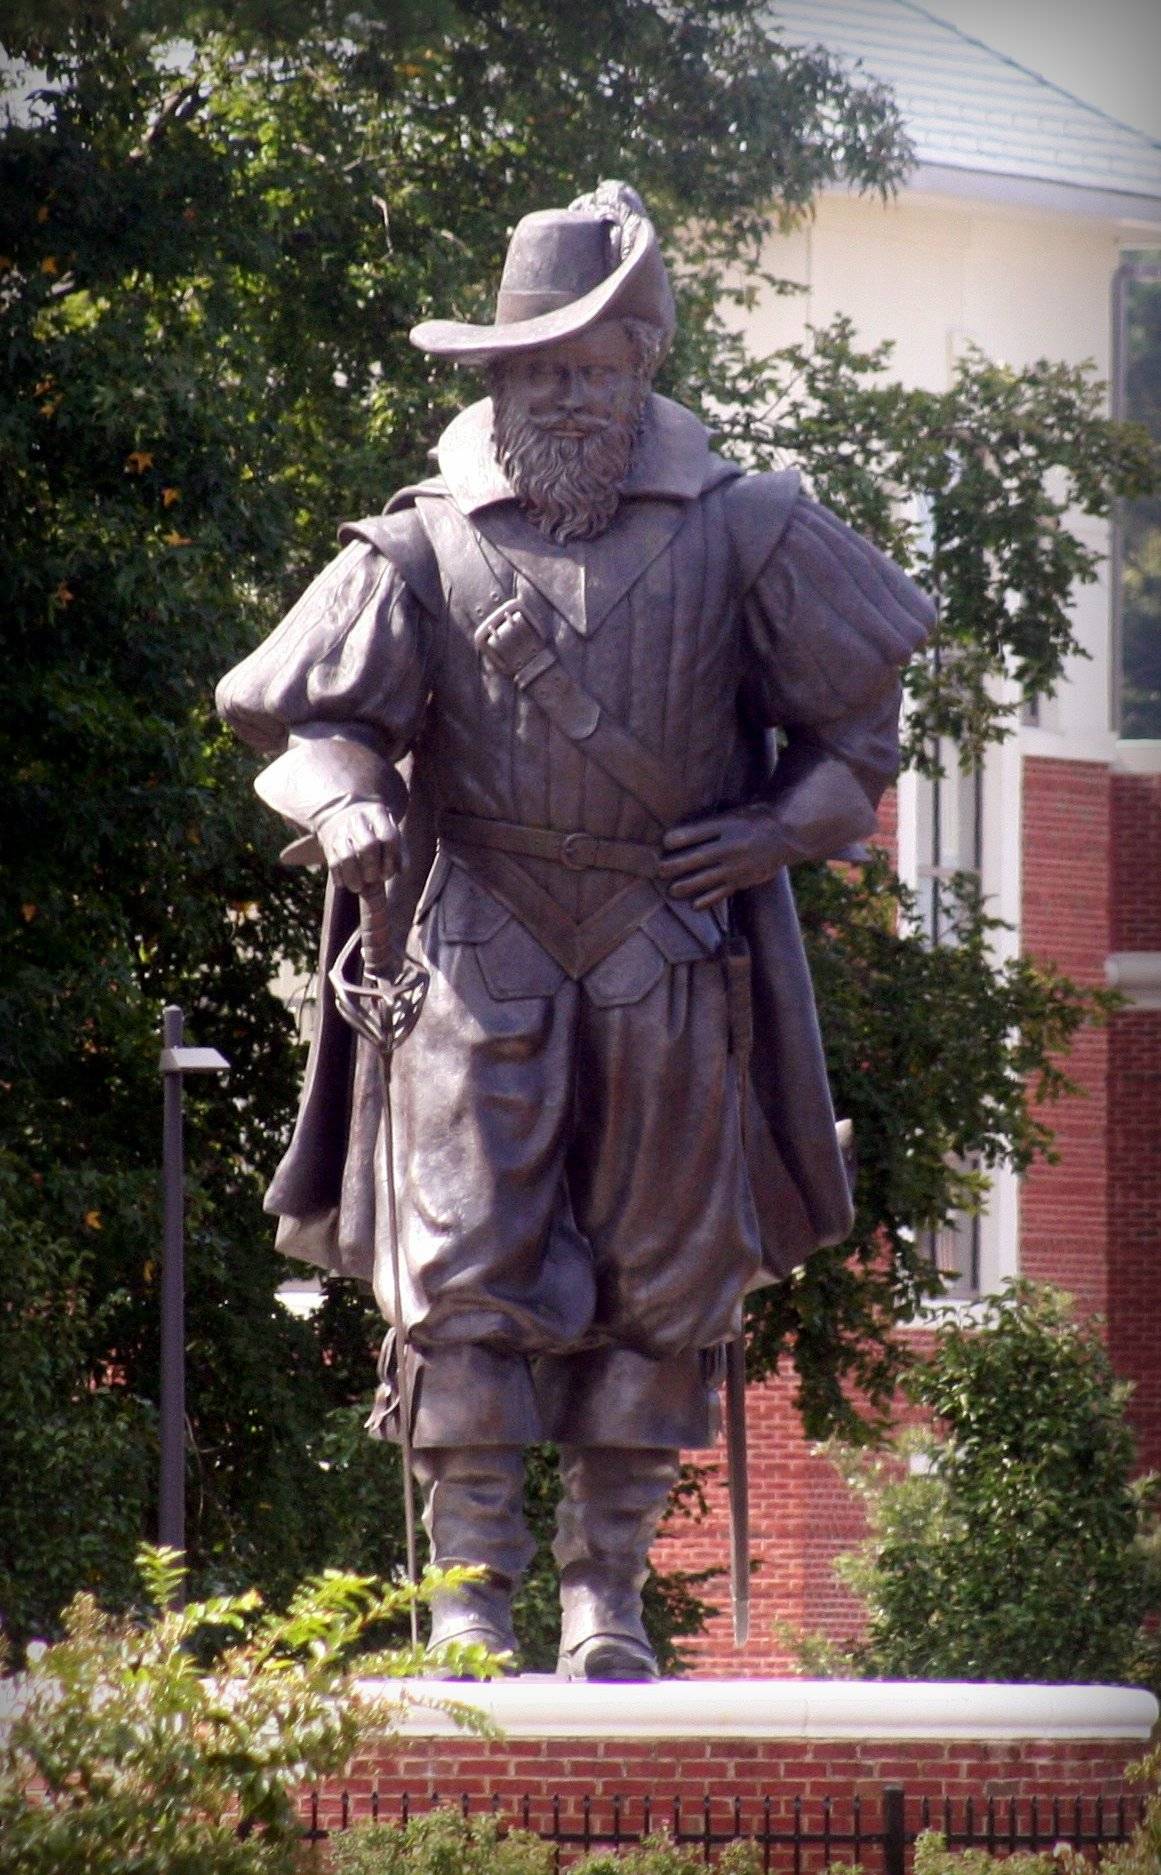 Pomnik mężczyzny w stroju z XVII wieku z szbalą u boku i wielkim kapeluszu